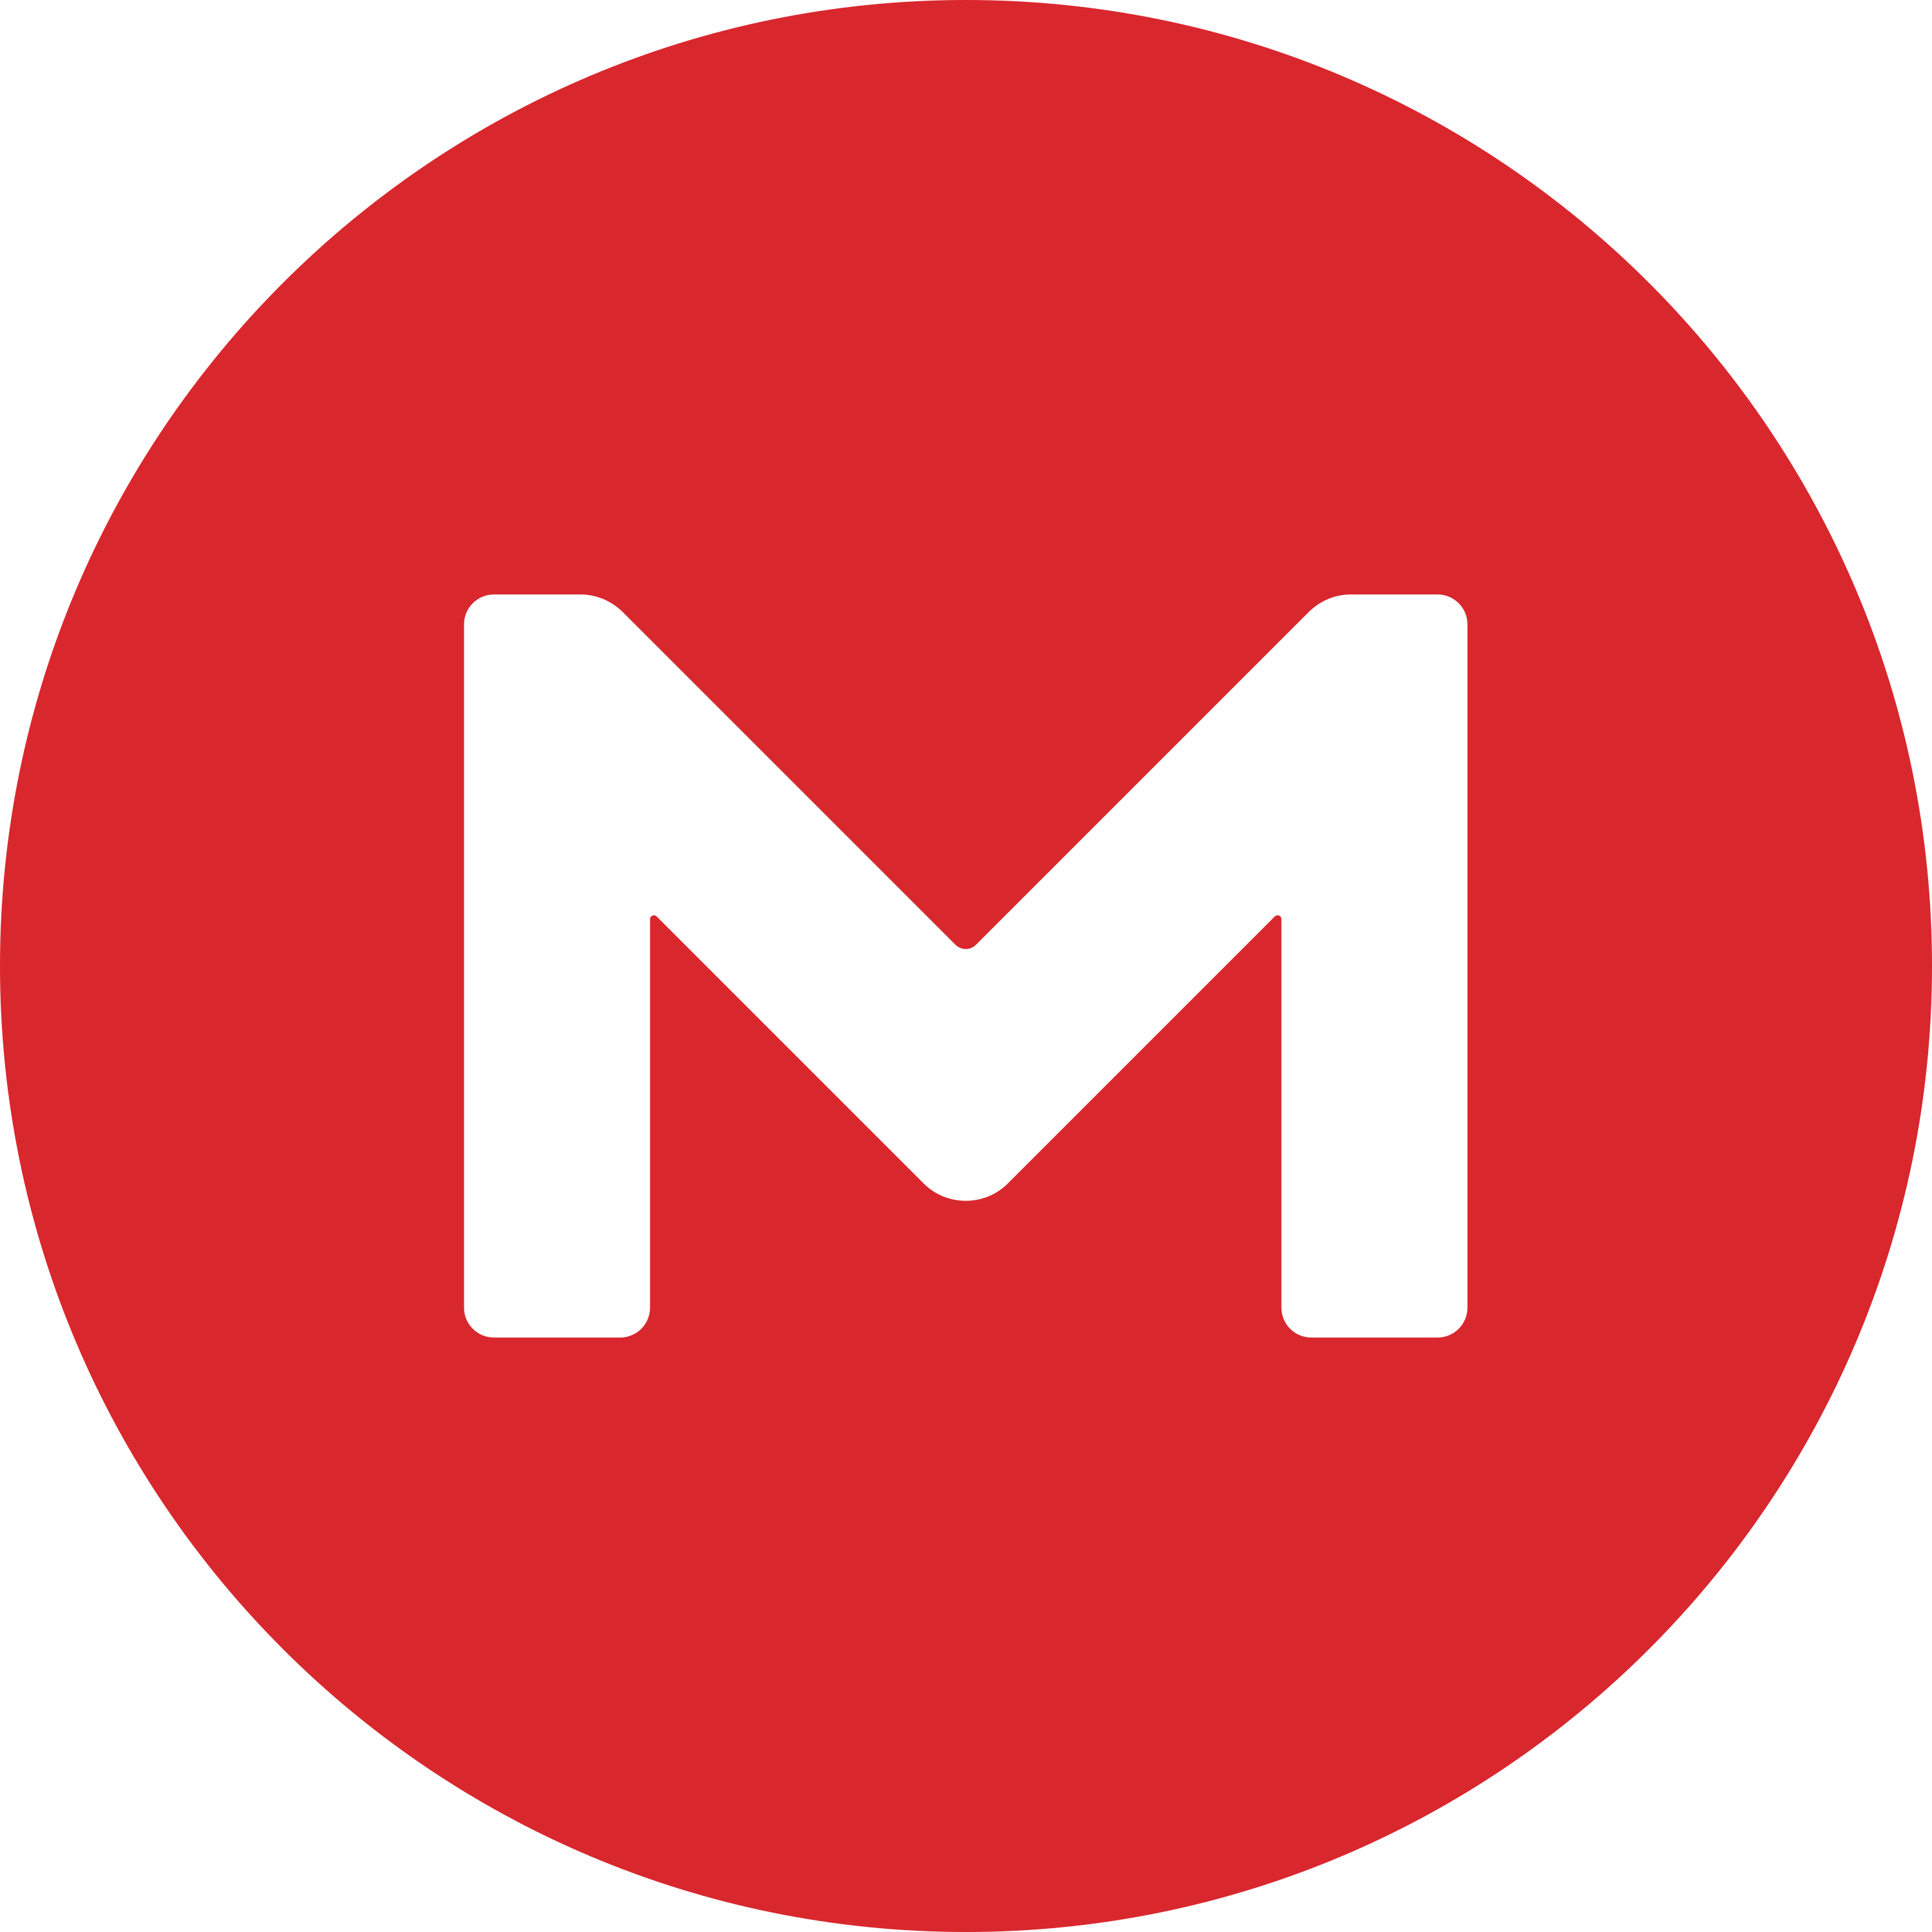 Mega nz Logo.